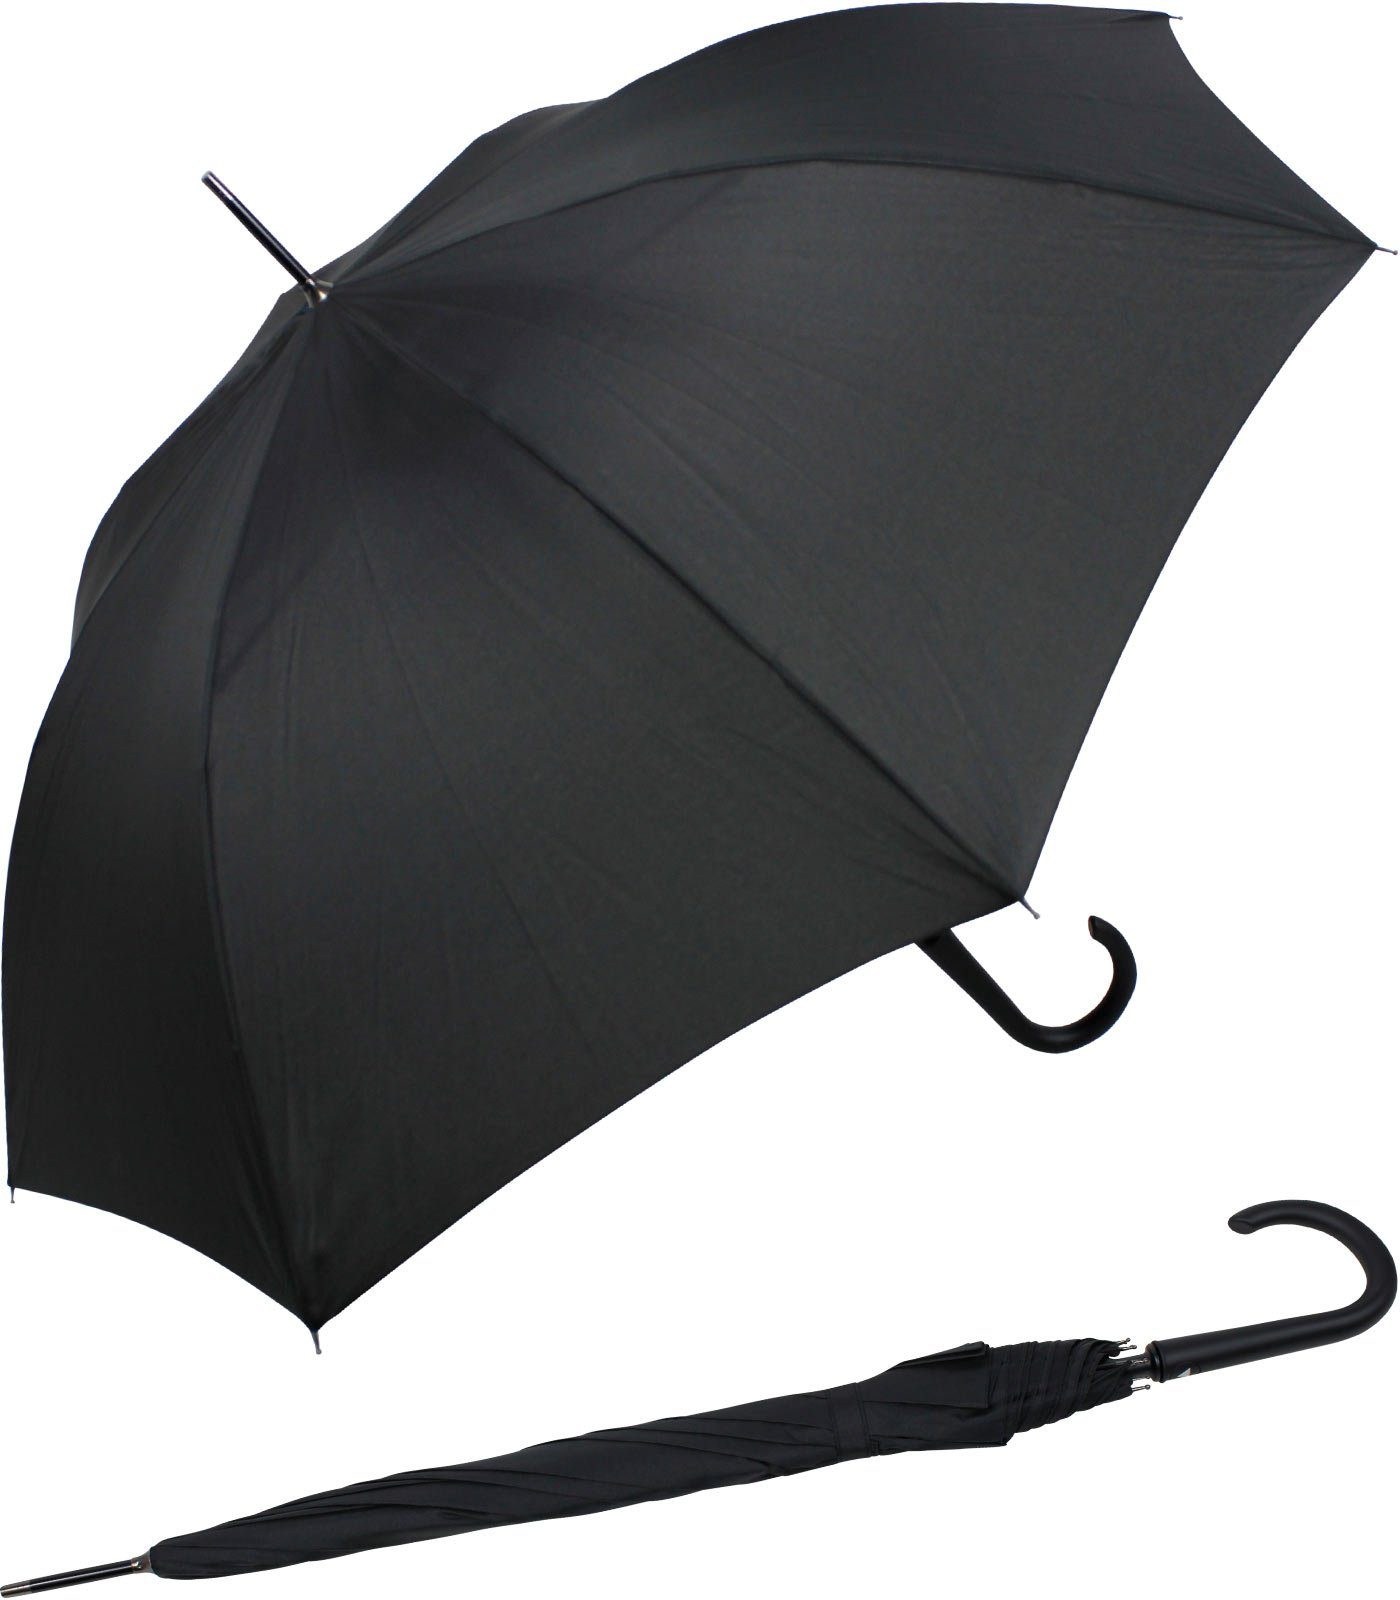 RS-Versand Langregenschirm großer stabiler Regenschirm mit Auf-Automatik, Stahl-Fiberglas-Gestell, integrierter Auslöseknopf schwarz